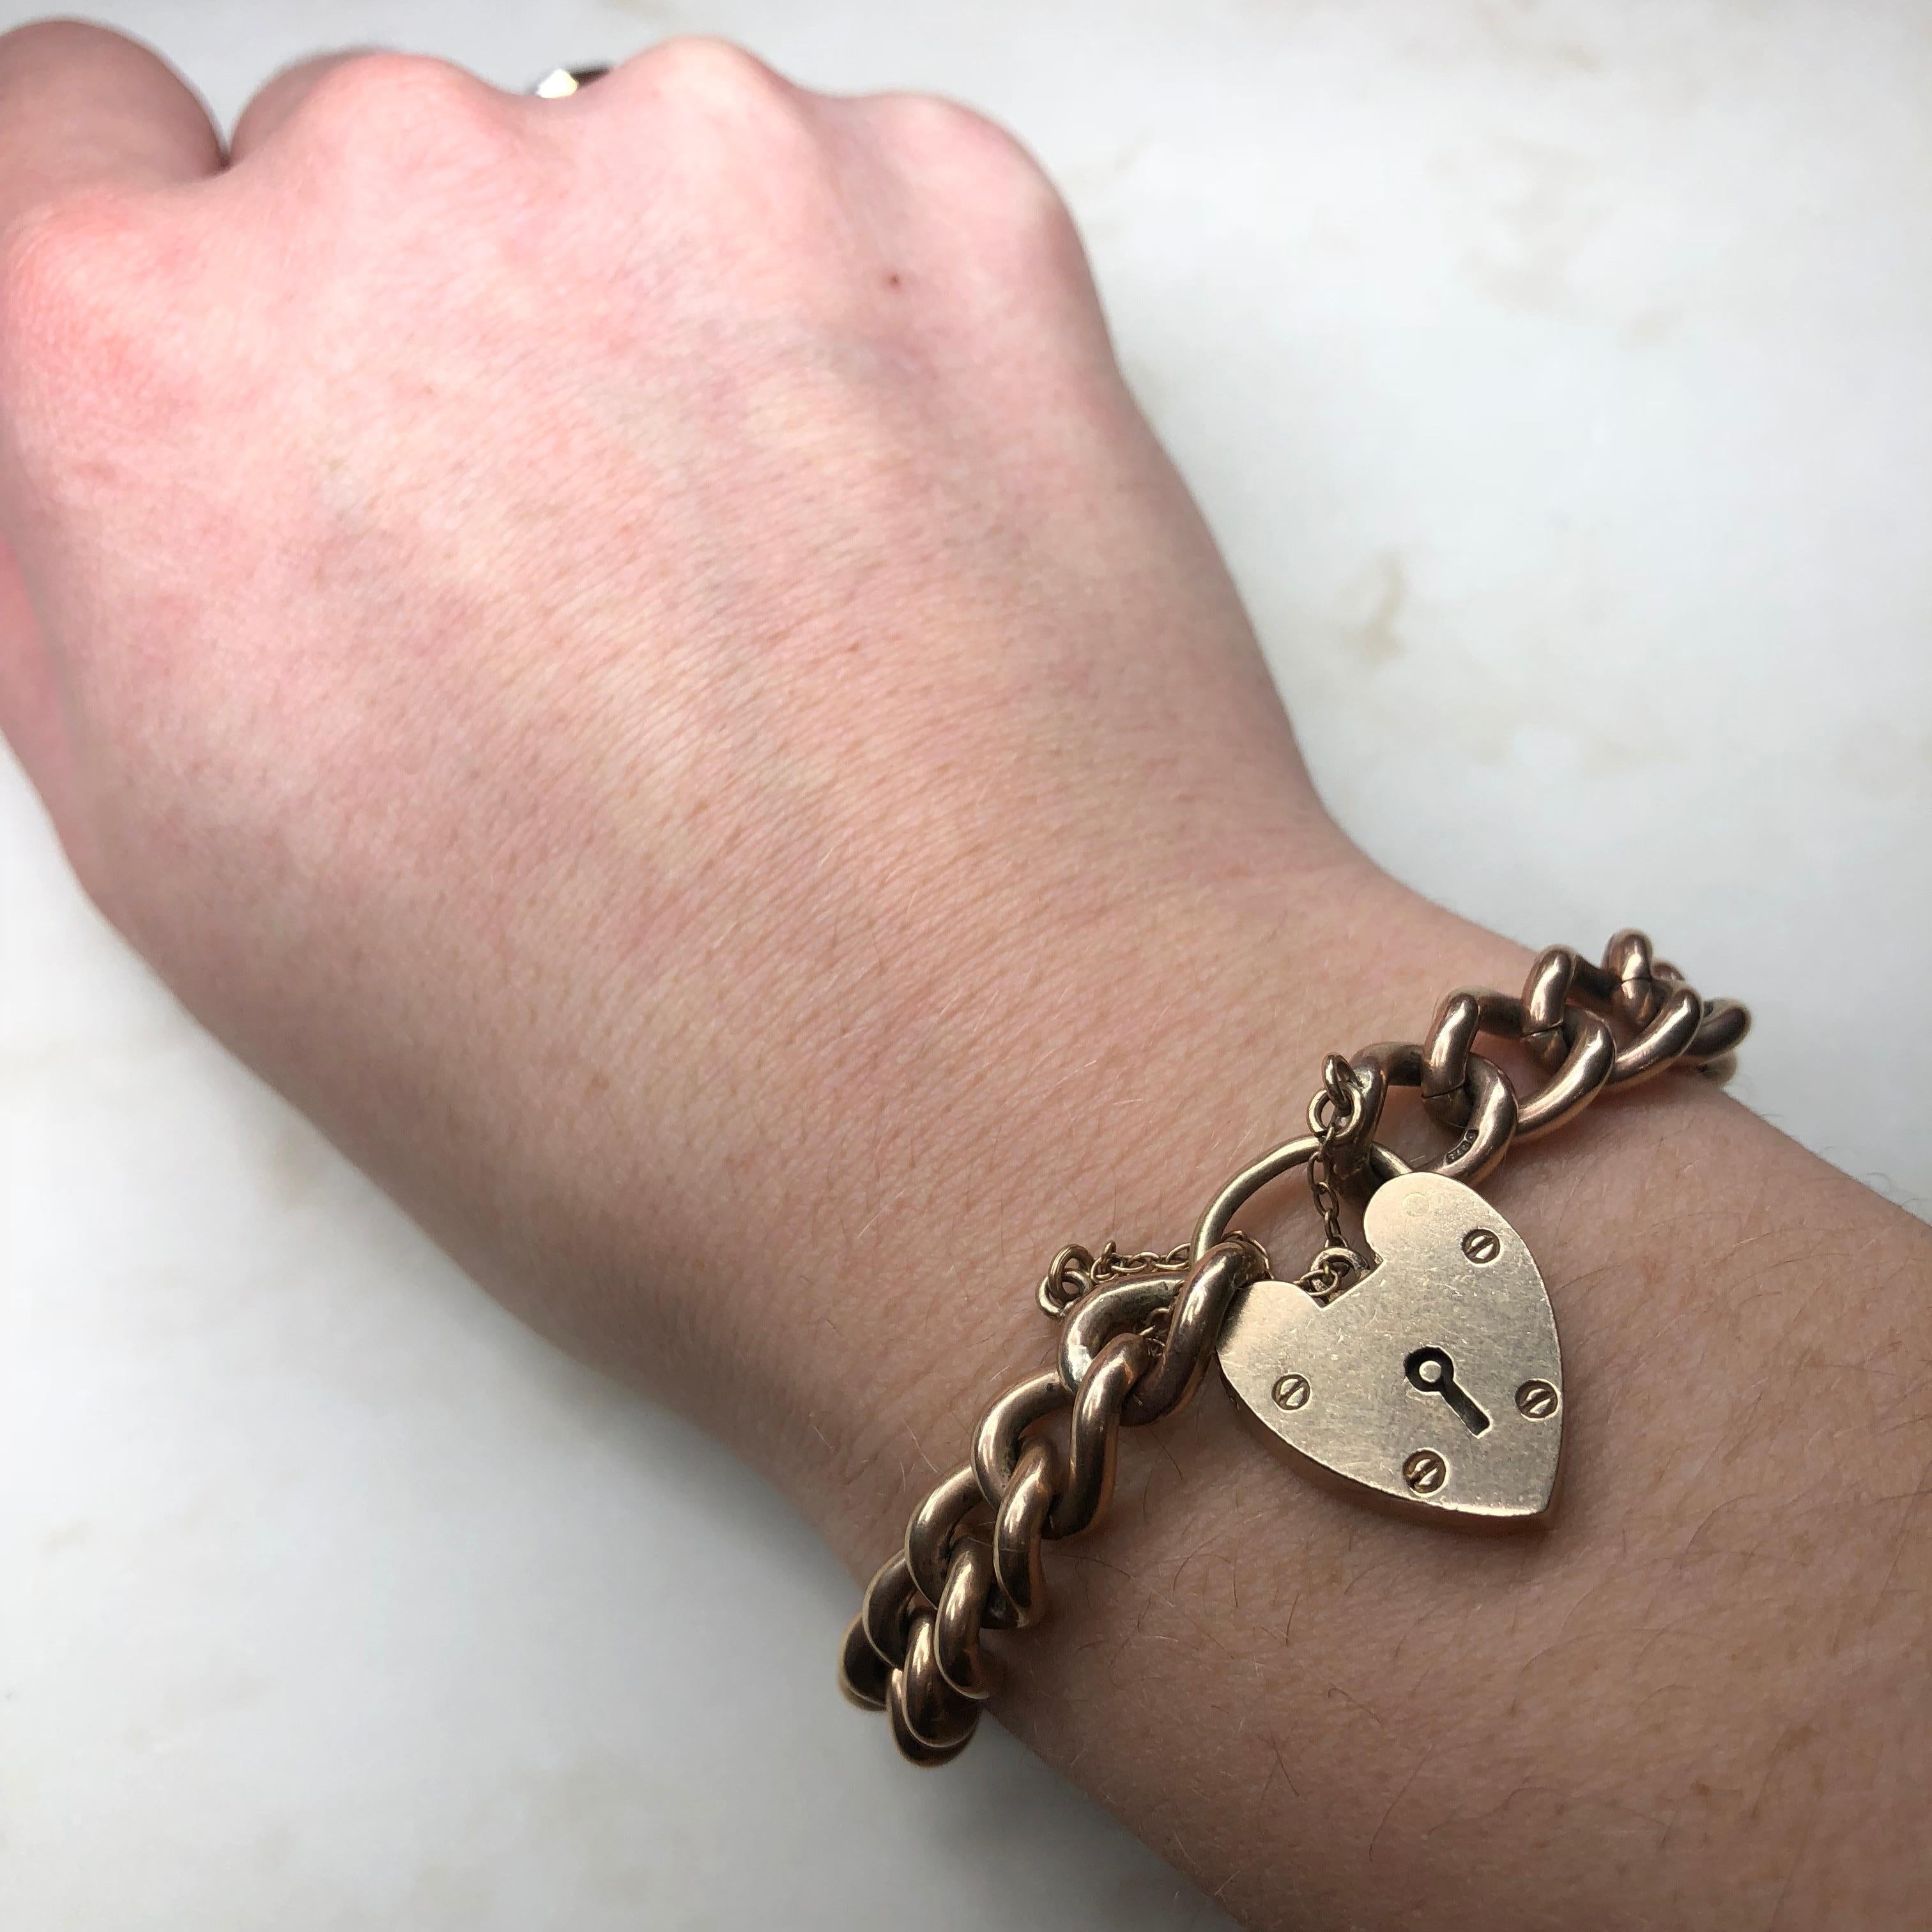 9 carat gold chain bracelet